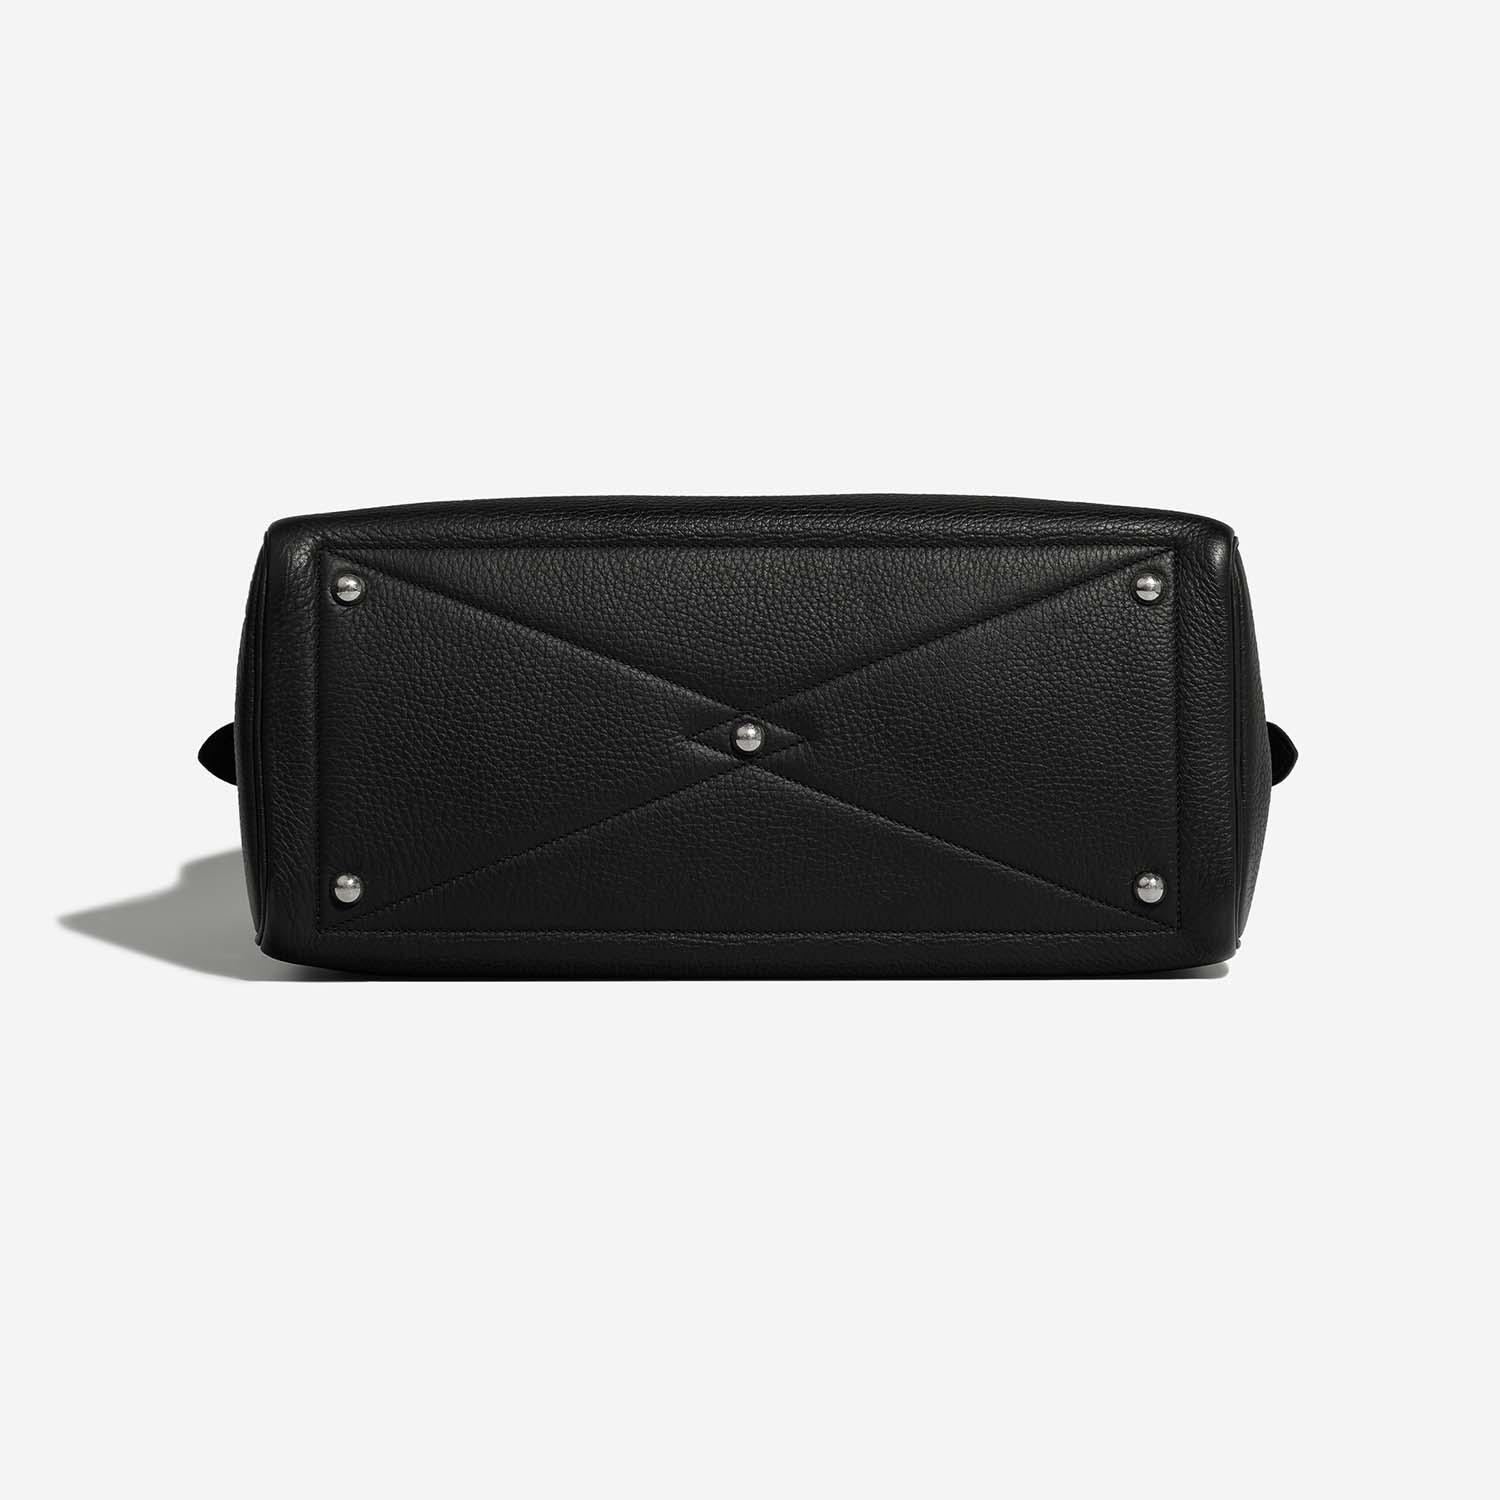 Hermès Victoria 35 Black Bottom | Verkaufen Sie Ihre Designer-Tasche auf Saclab.com